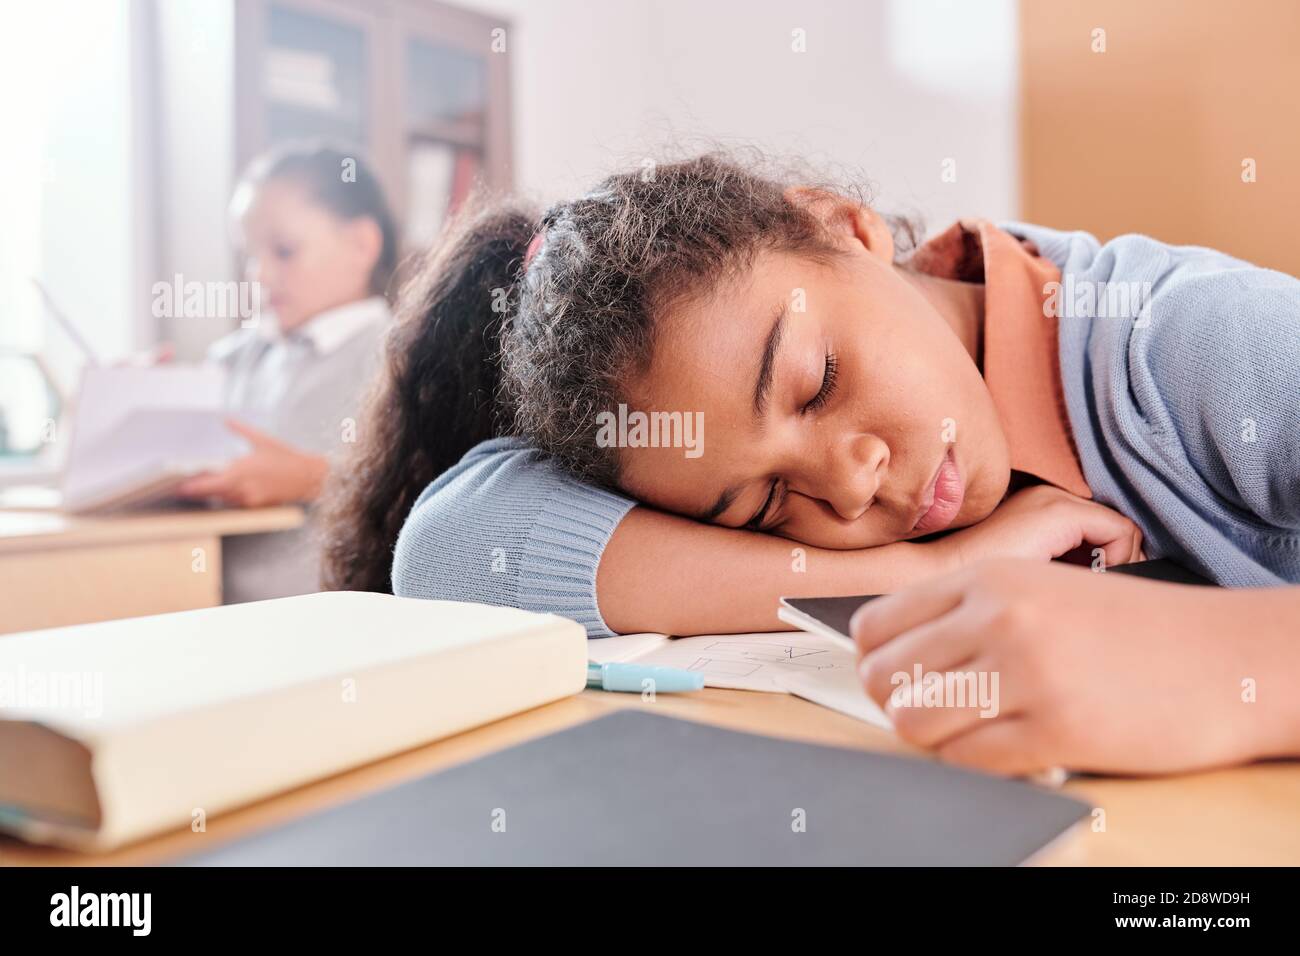 Une écolière épuisée ou lasse en vêtements décontractés qui tient la tête sur le bureau pendant le rodage Banque D'Images